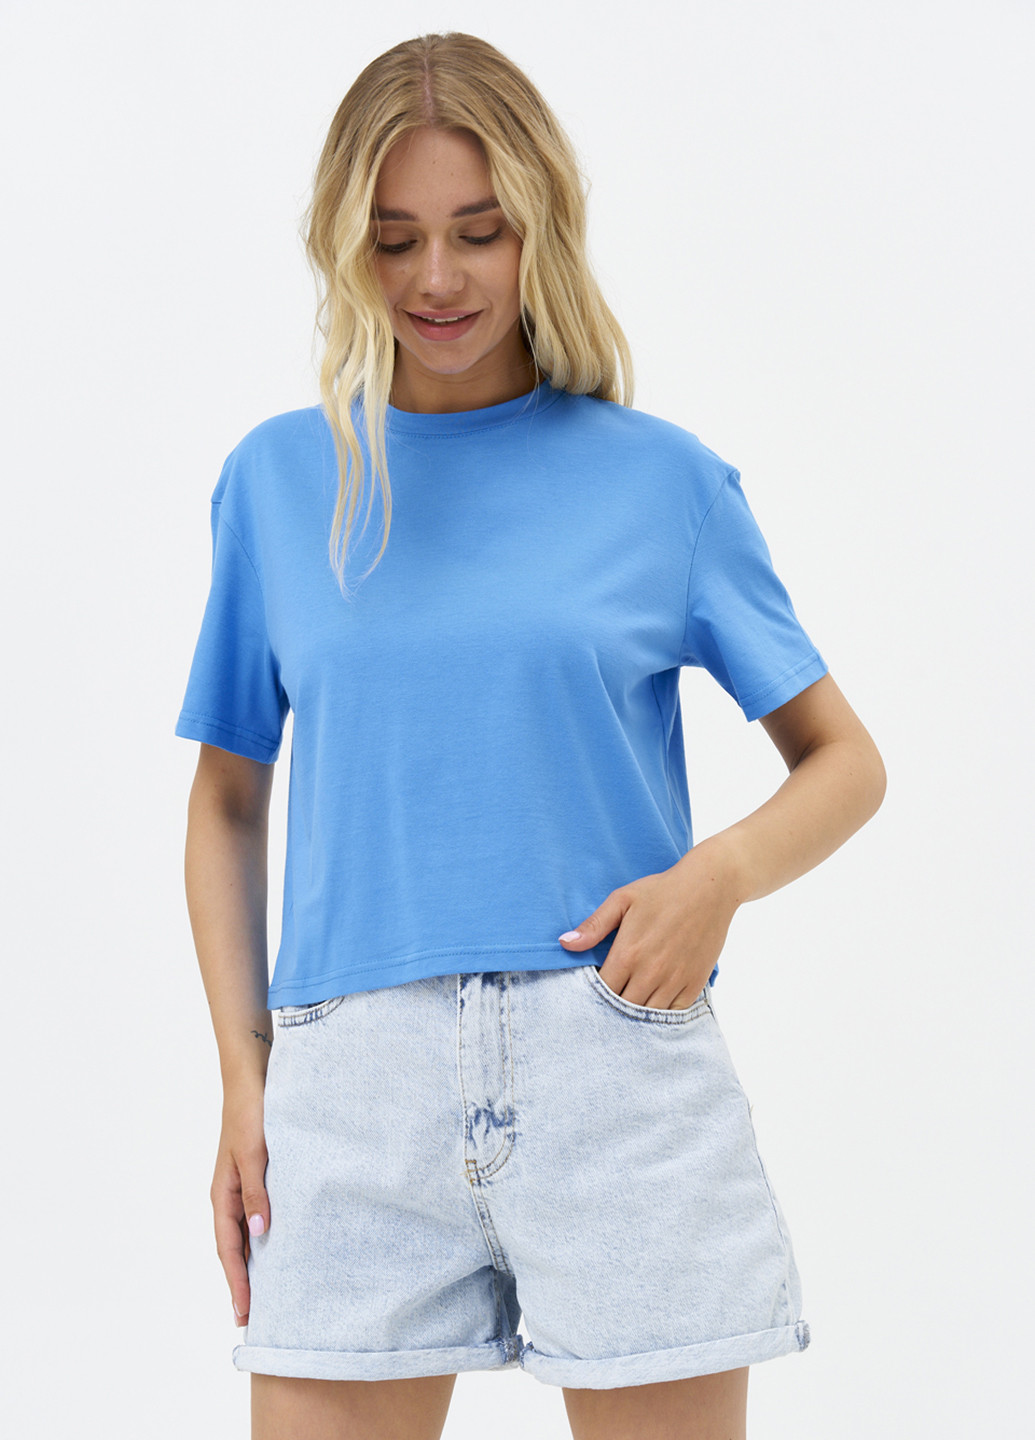 Светло-синяя летняя футболка женская укороченная KASTA design